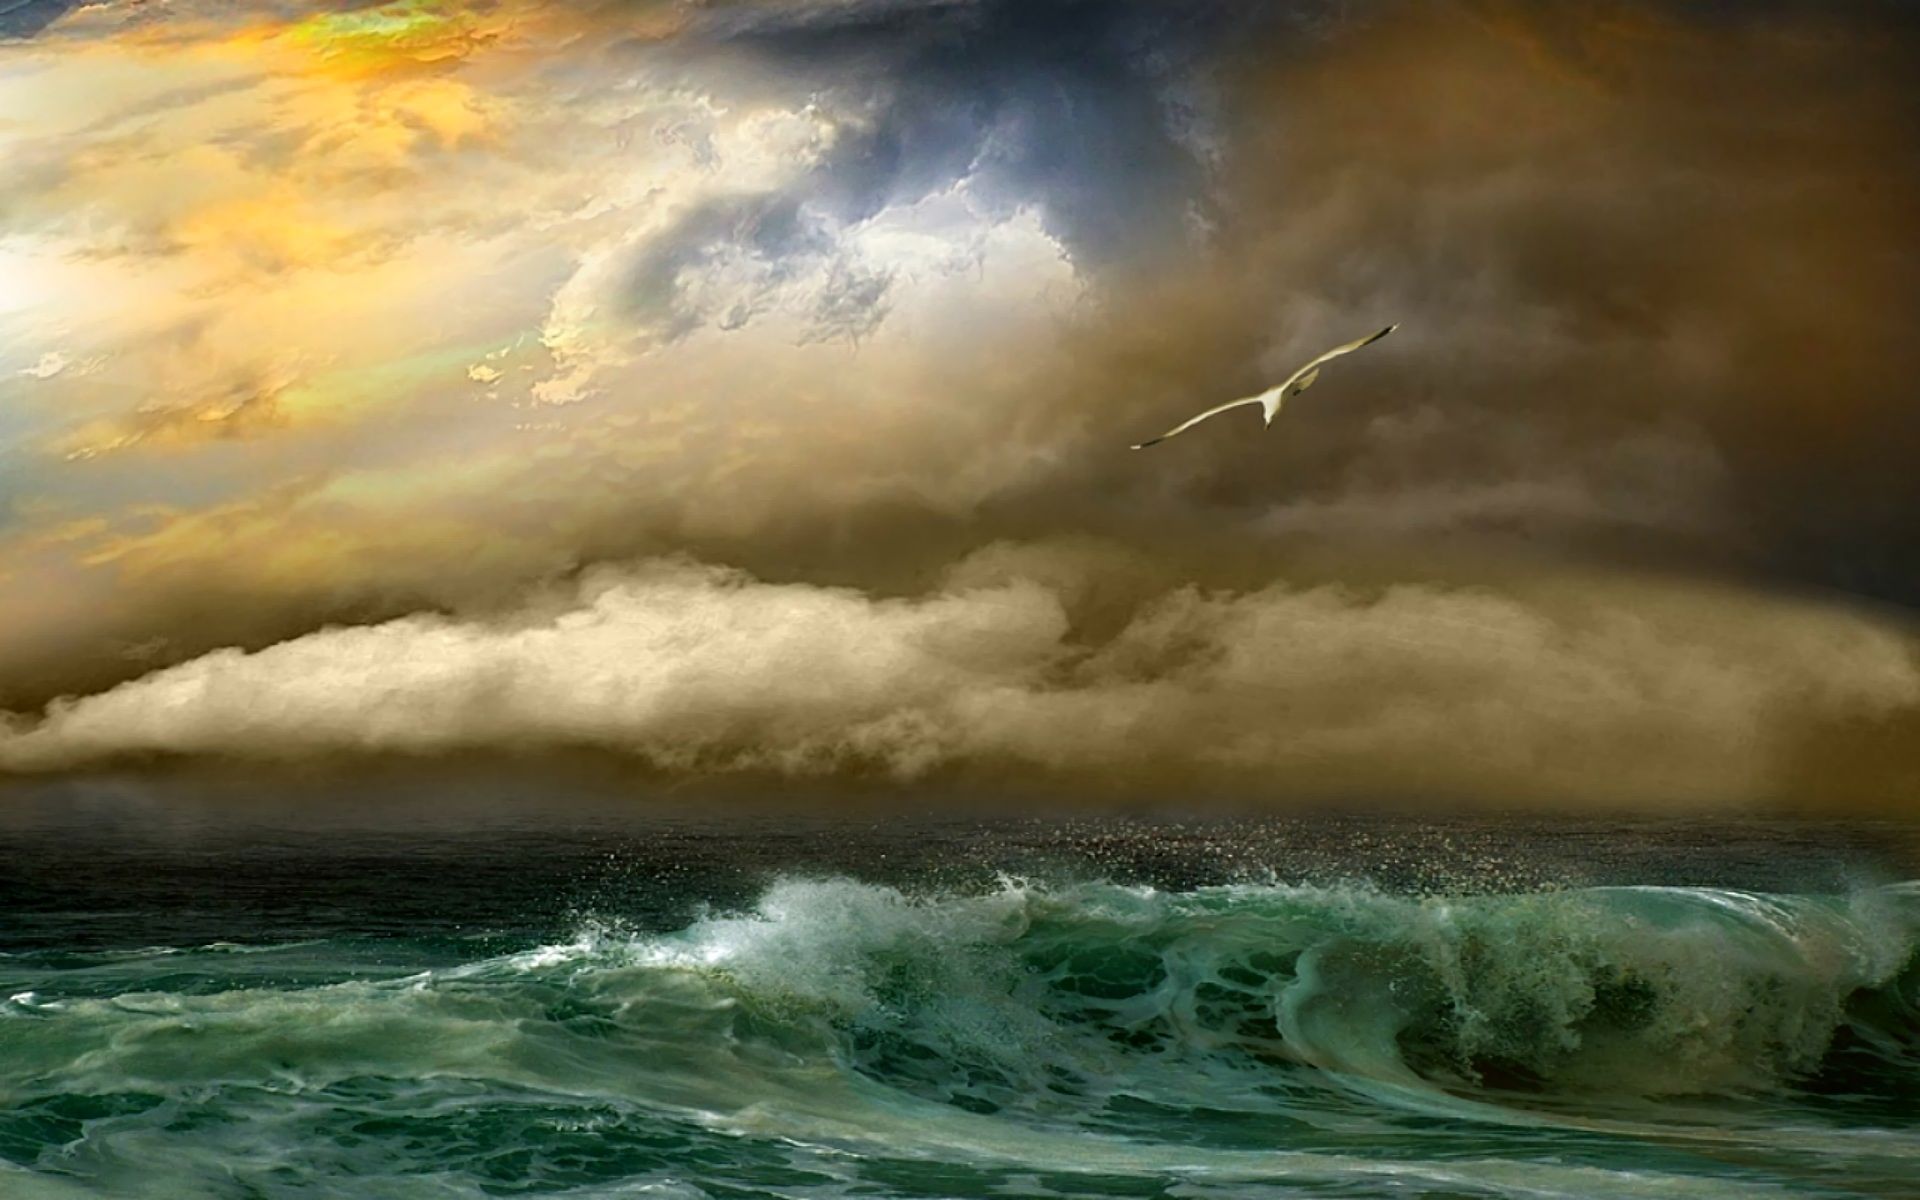 Скачать обои бесплатно Небо, Море, Чайки, Облака, Океан, Волна, Земля/природа картинка на рабочий стол ПК